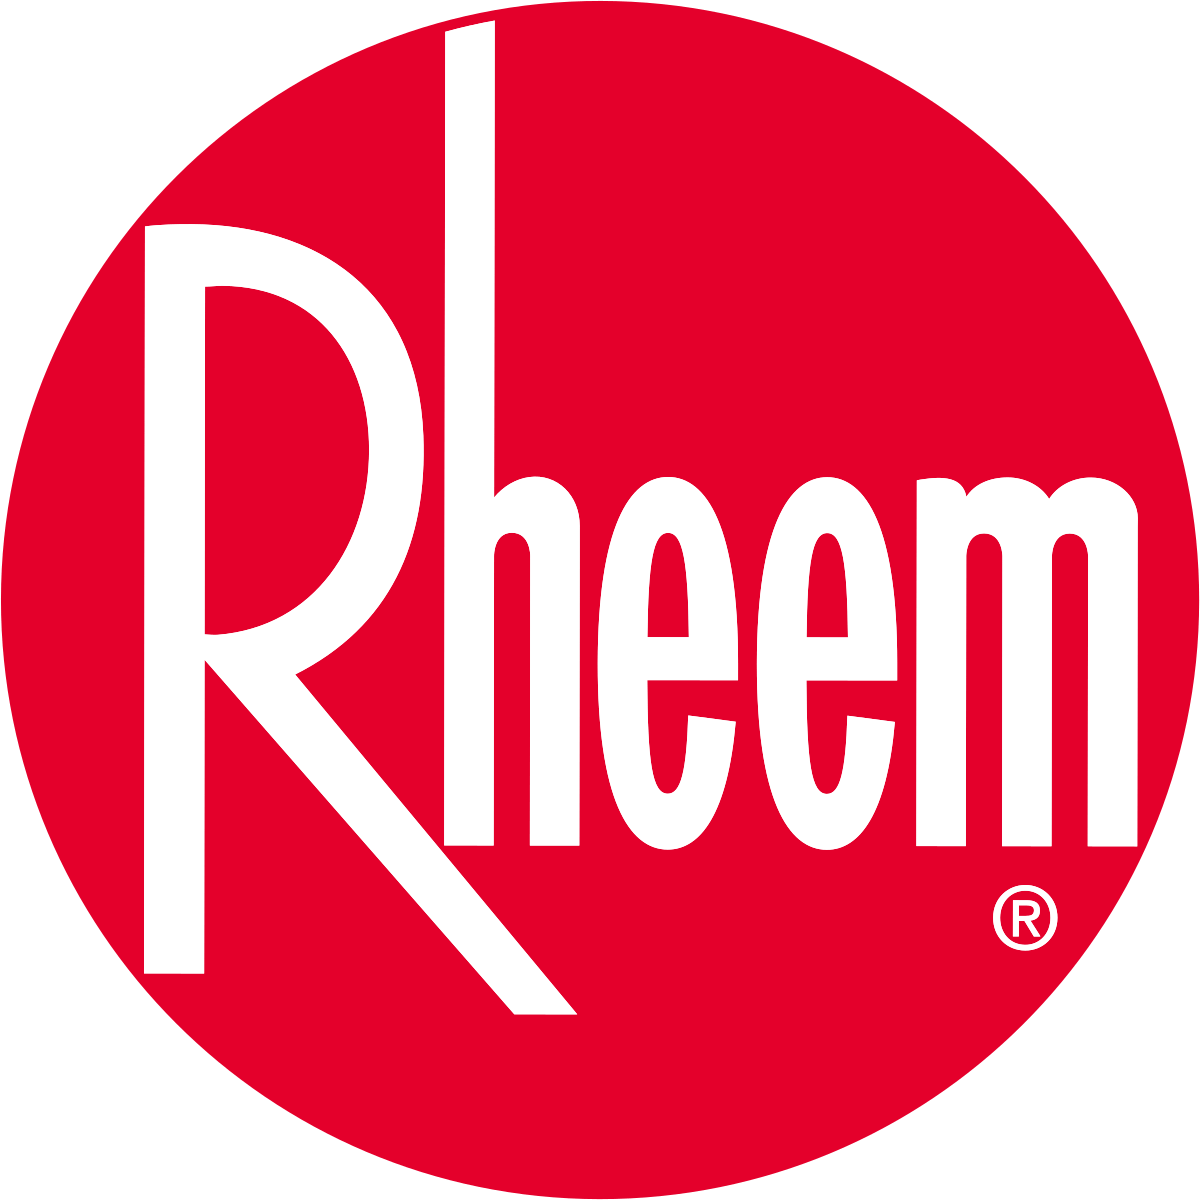 https://cdn.revjet.com/s3/csp/1670600120241/Rheem_logo.png